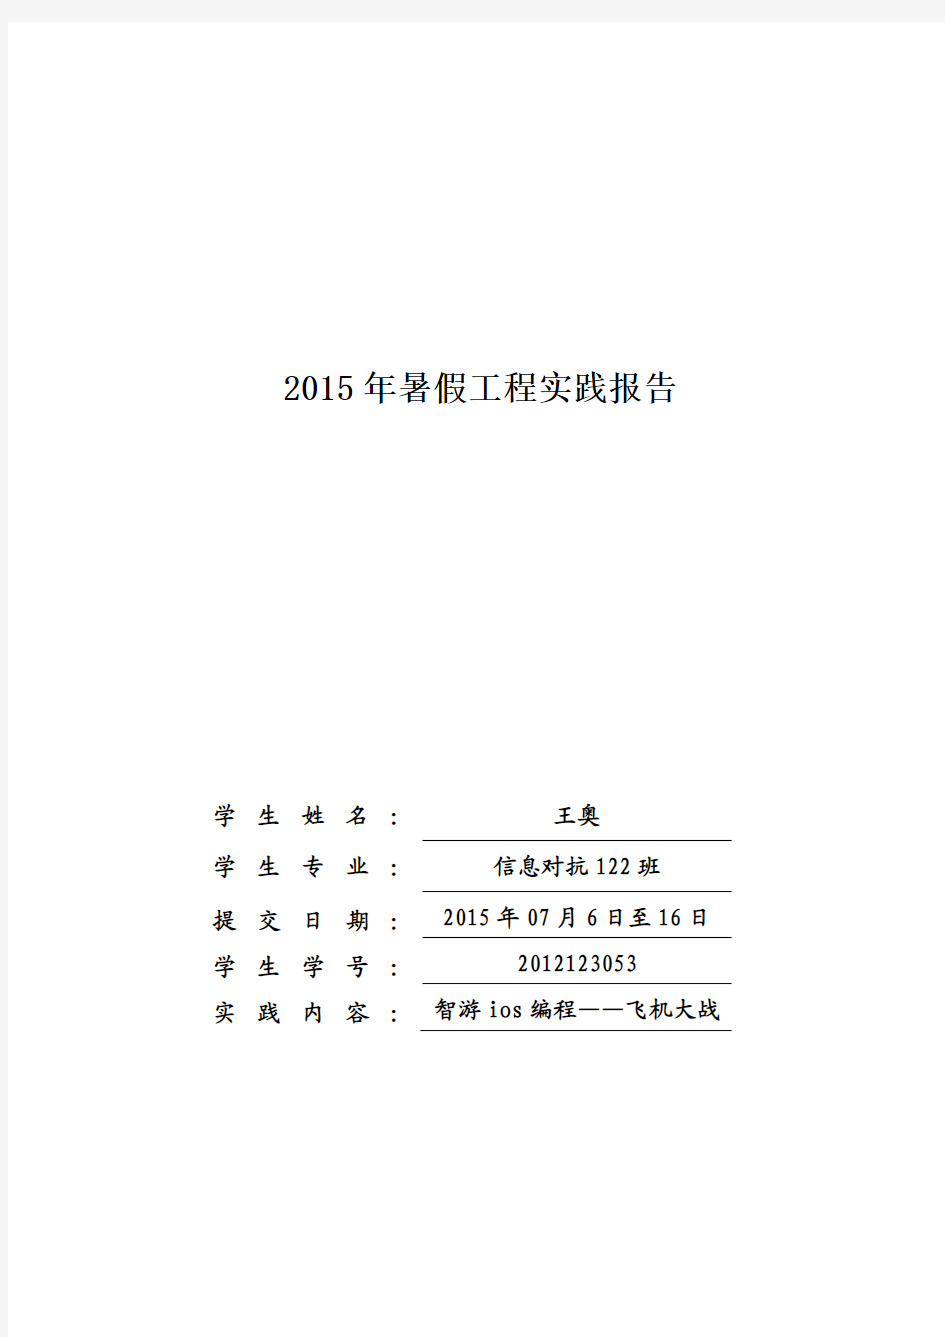 2015年工程实践报告-2012123053-王奥